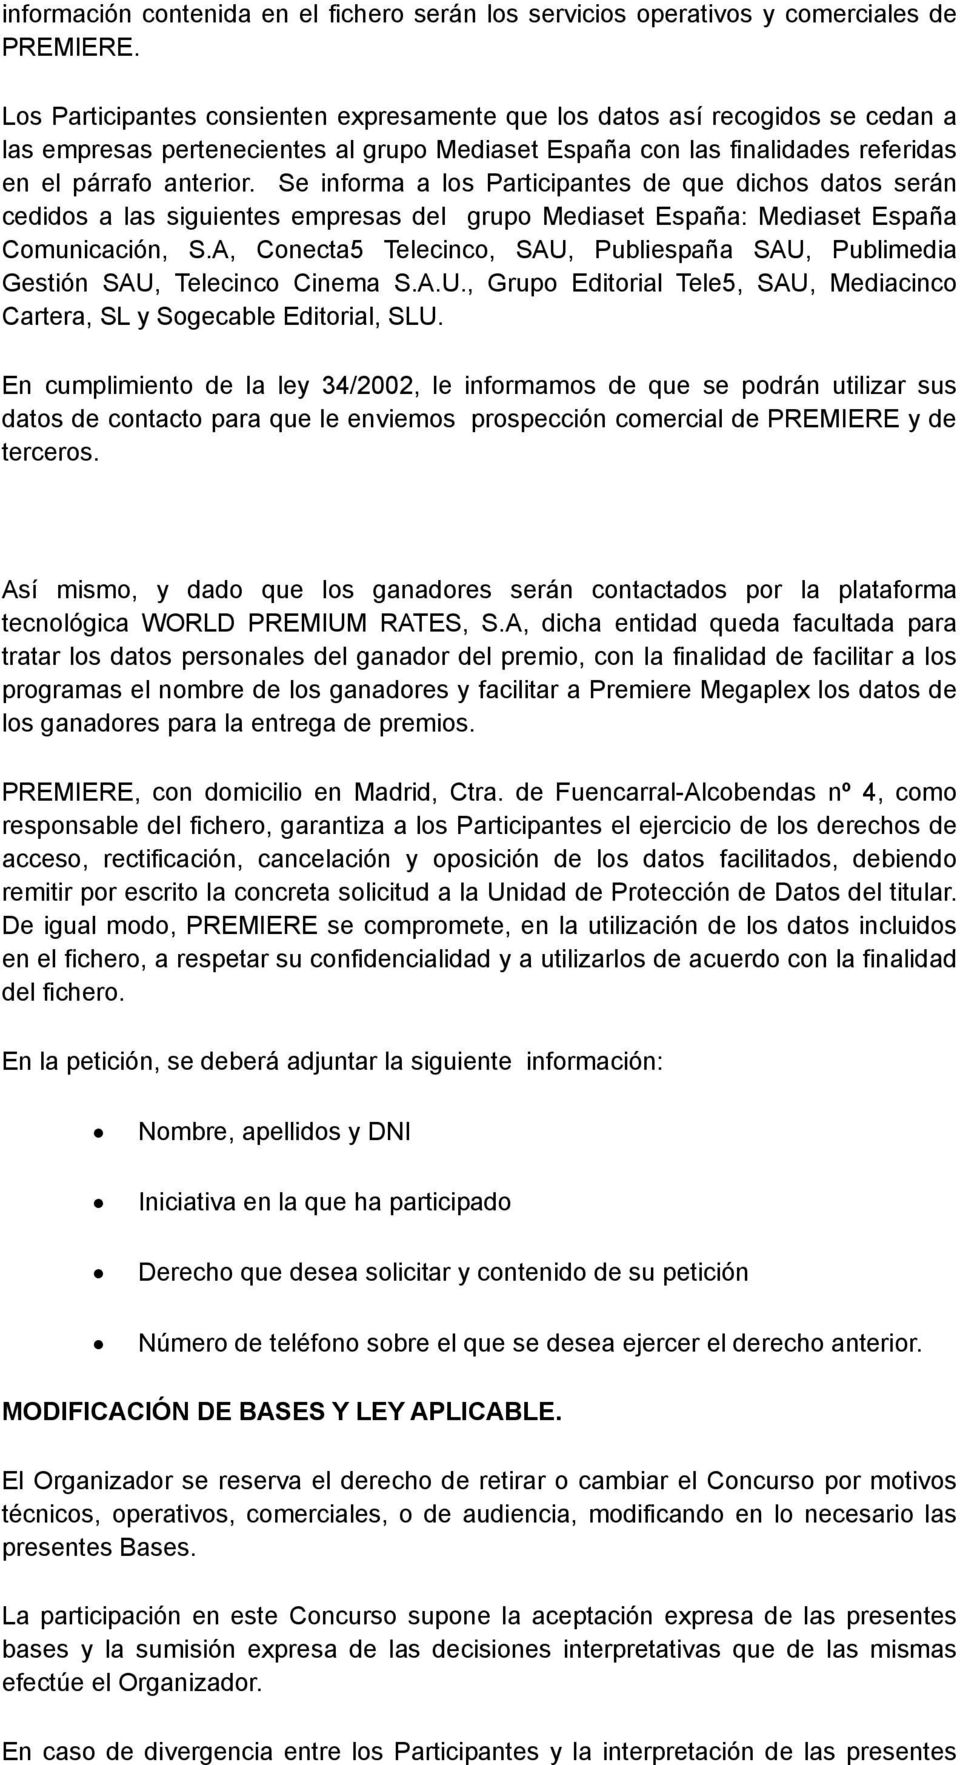 Se informa a los Participantes de que dichos datos serán cedidos a las siguientes empresas del grupo Mediaset España: Mediaset España Comunicación, S.